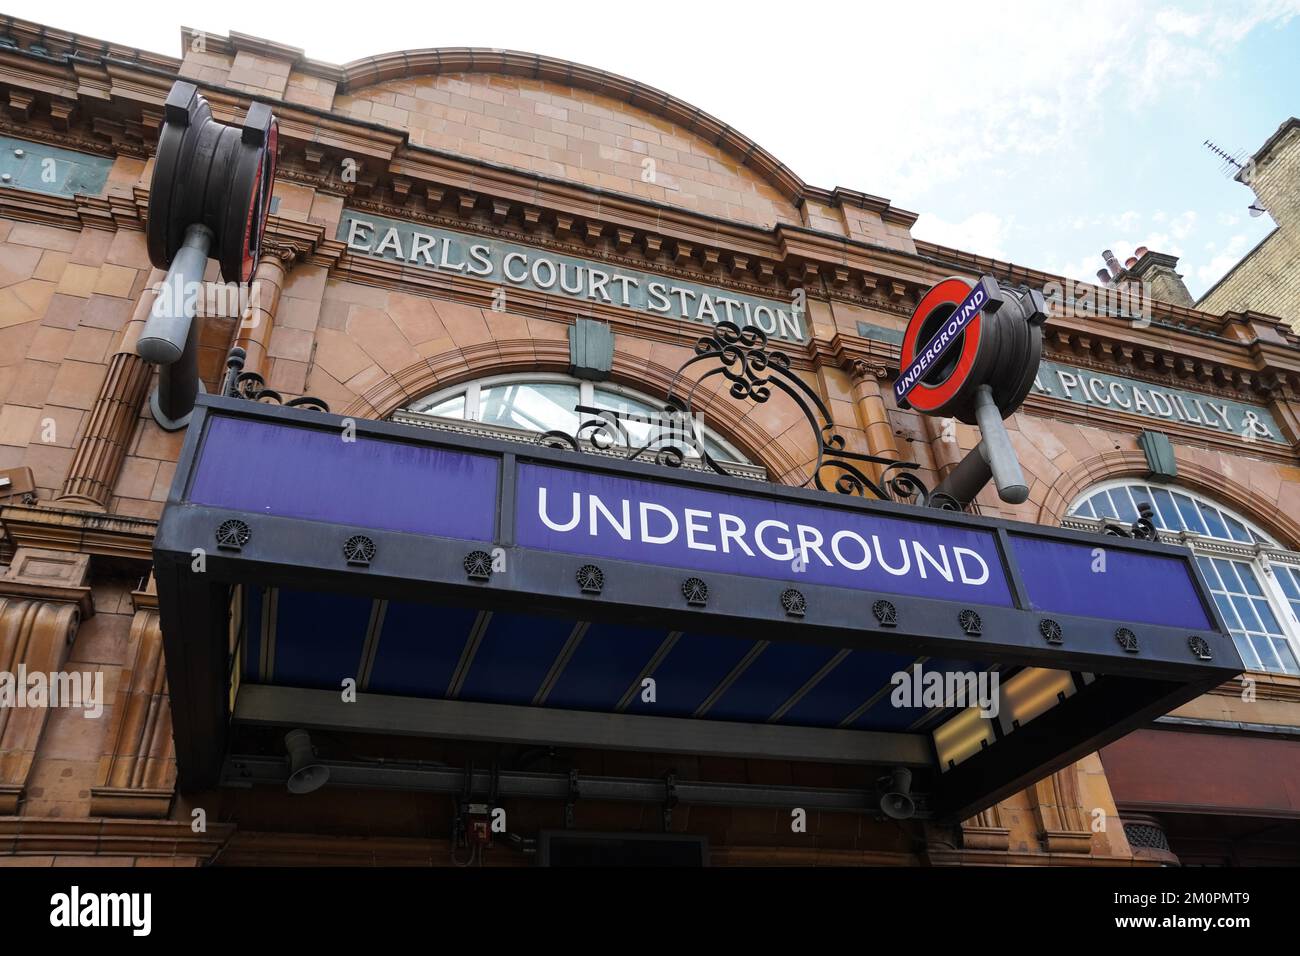 Station de métro Earl's court à Londres Angleterre Royaume-Uni Banque D'Images